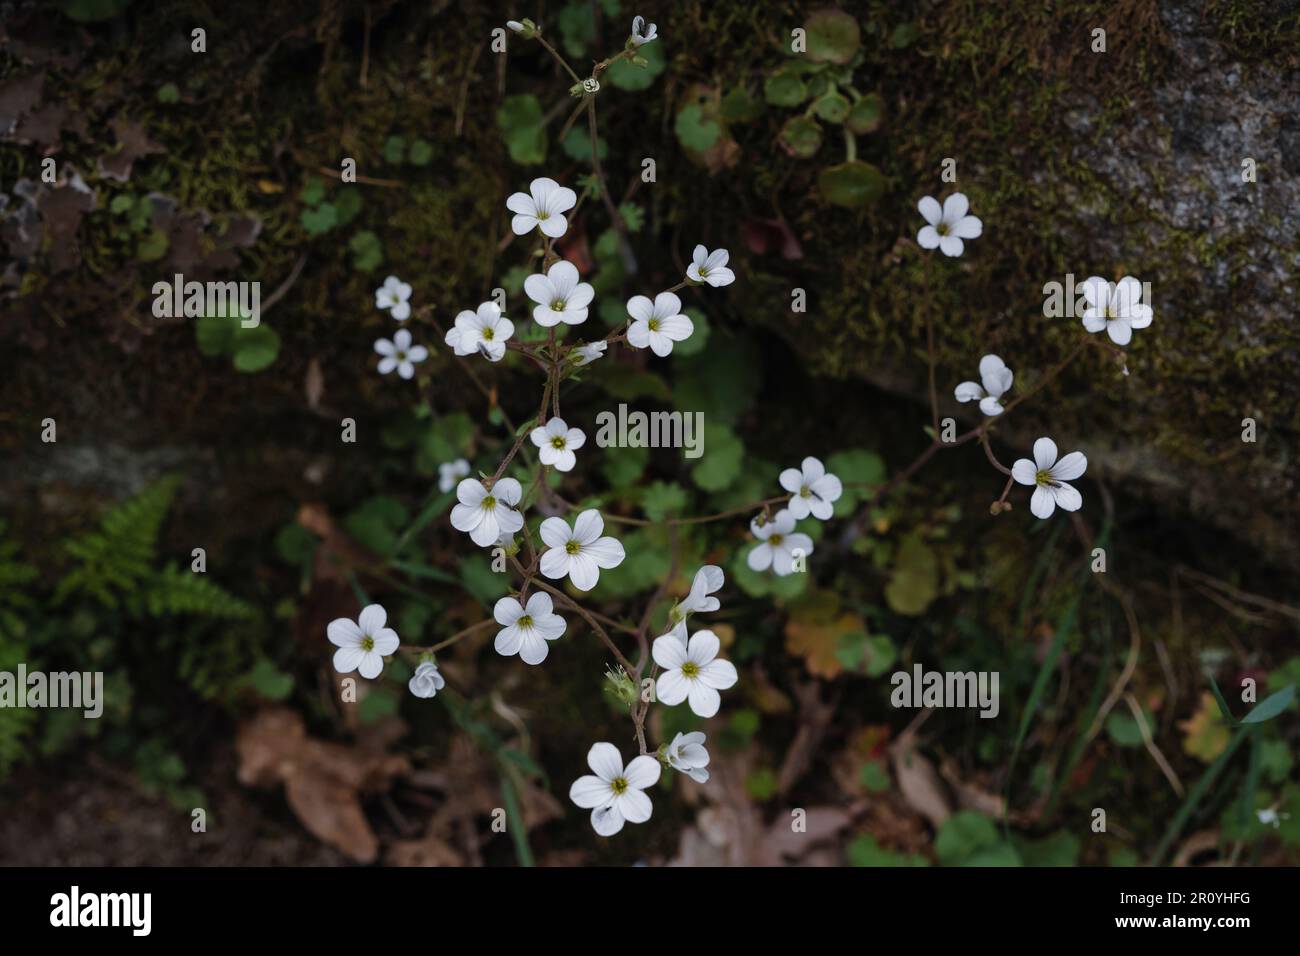 Meadow saxifrage (Saxifraga granulata L.) white flowers Stock Photo